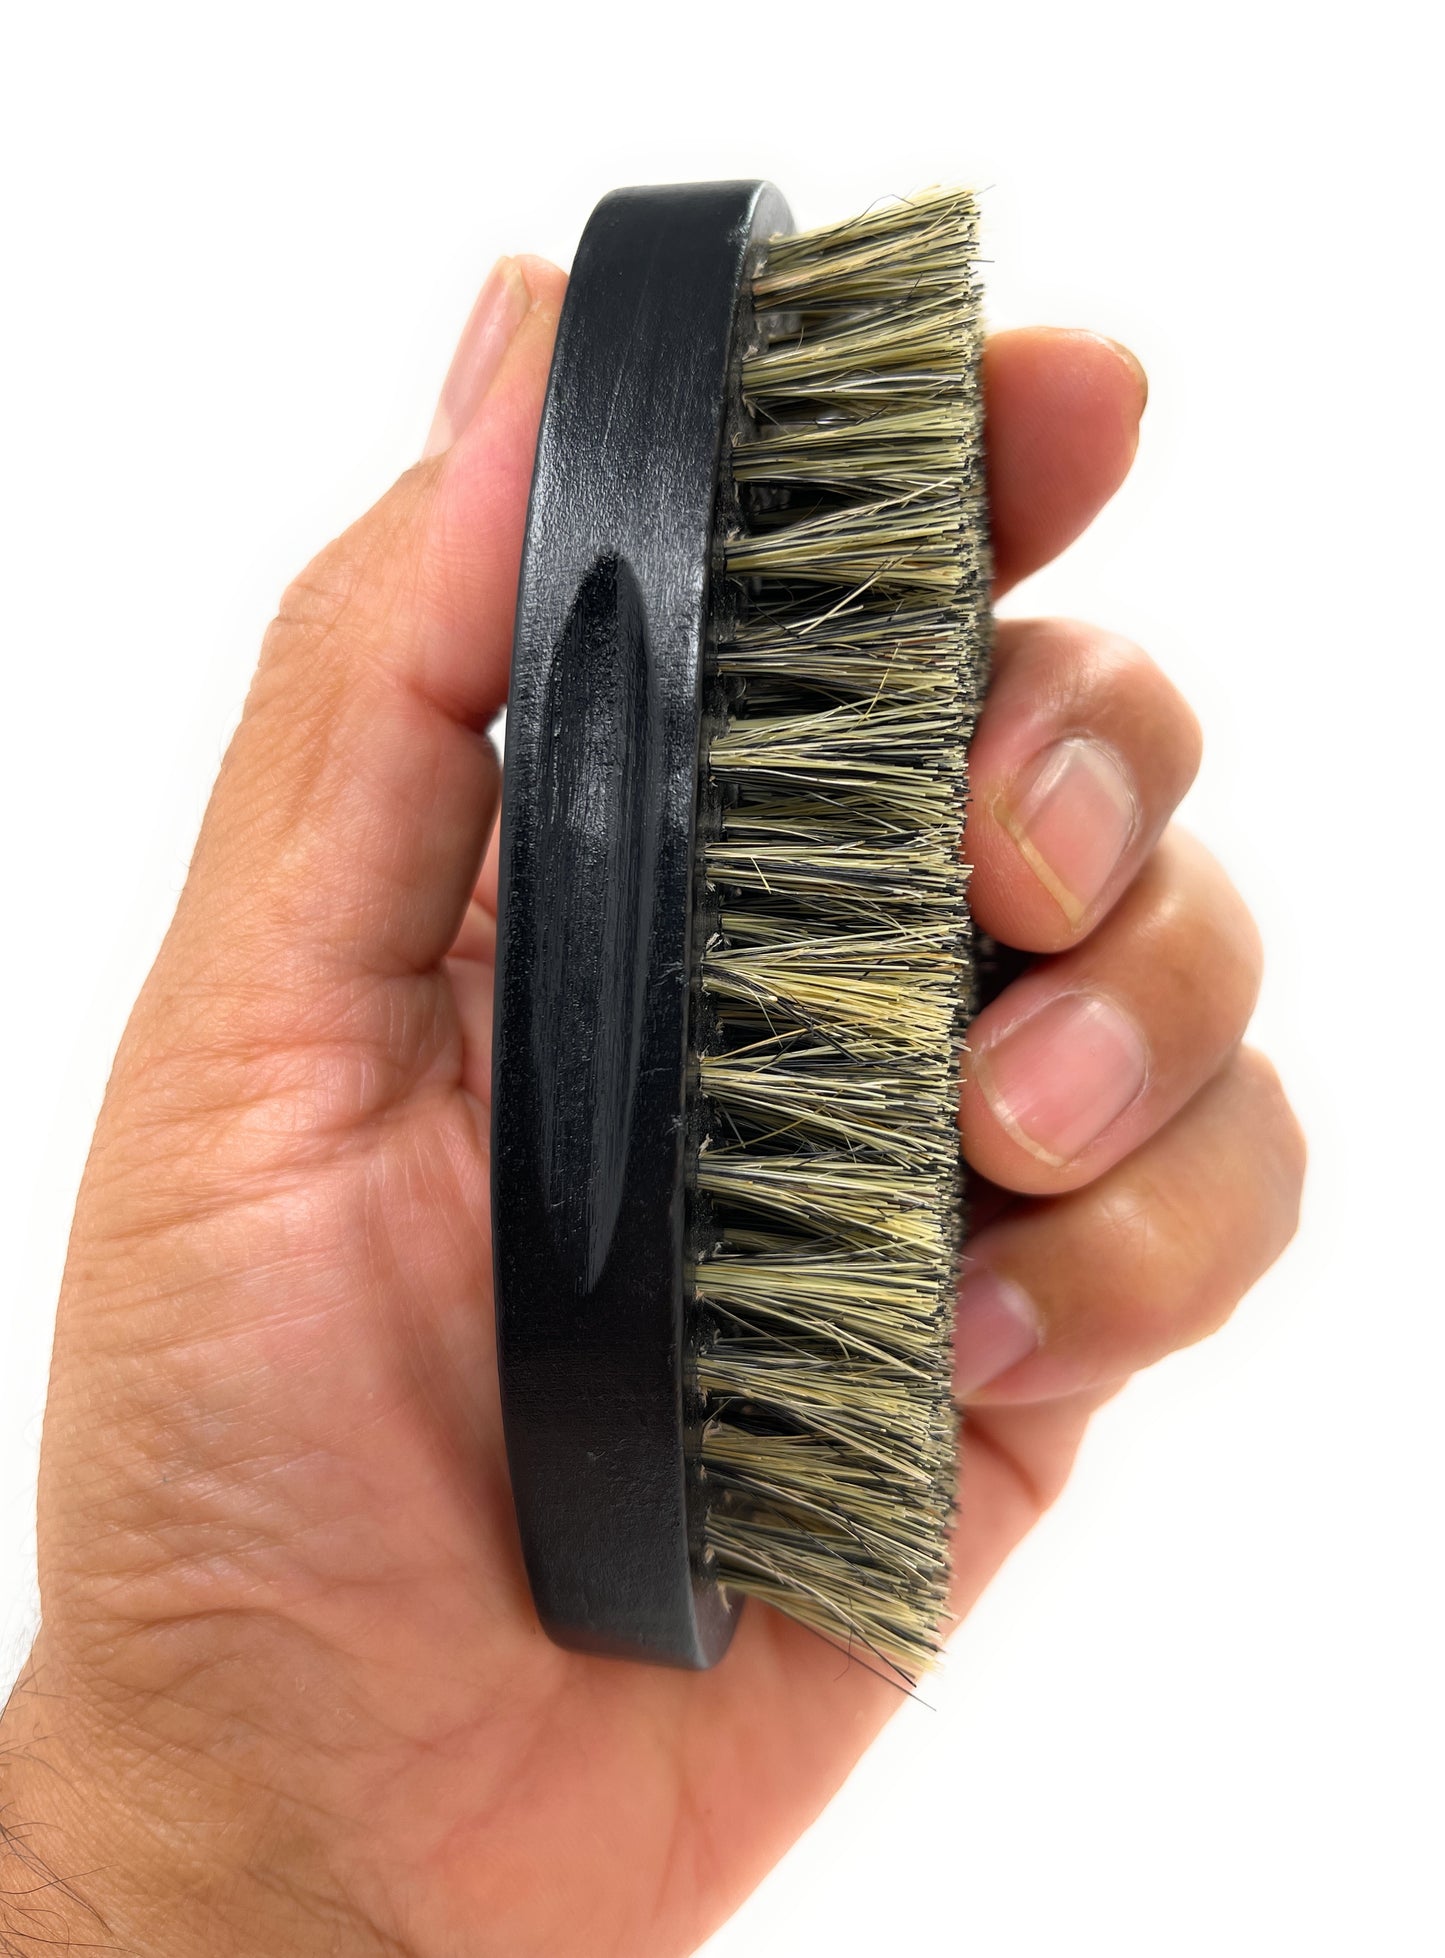 Phillips Brush military Wood Bristle Beard Brush Black Wood Military Style For Short Hair